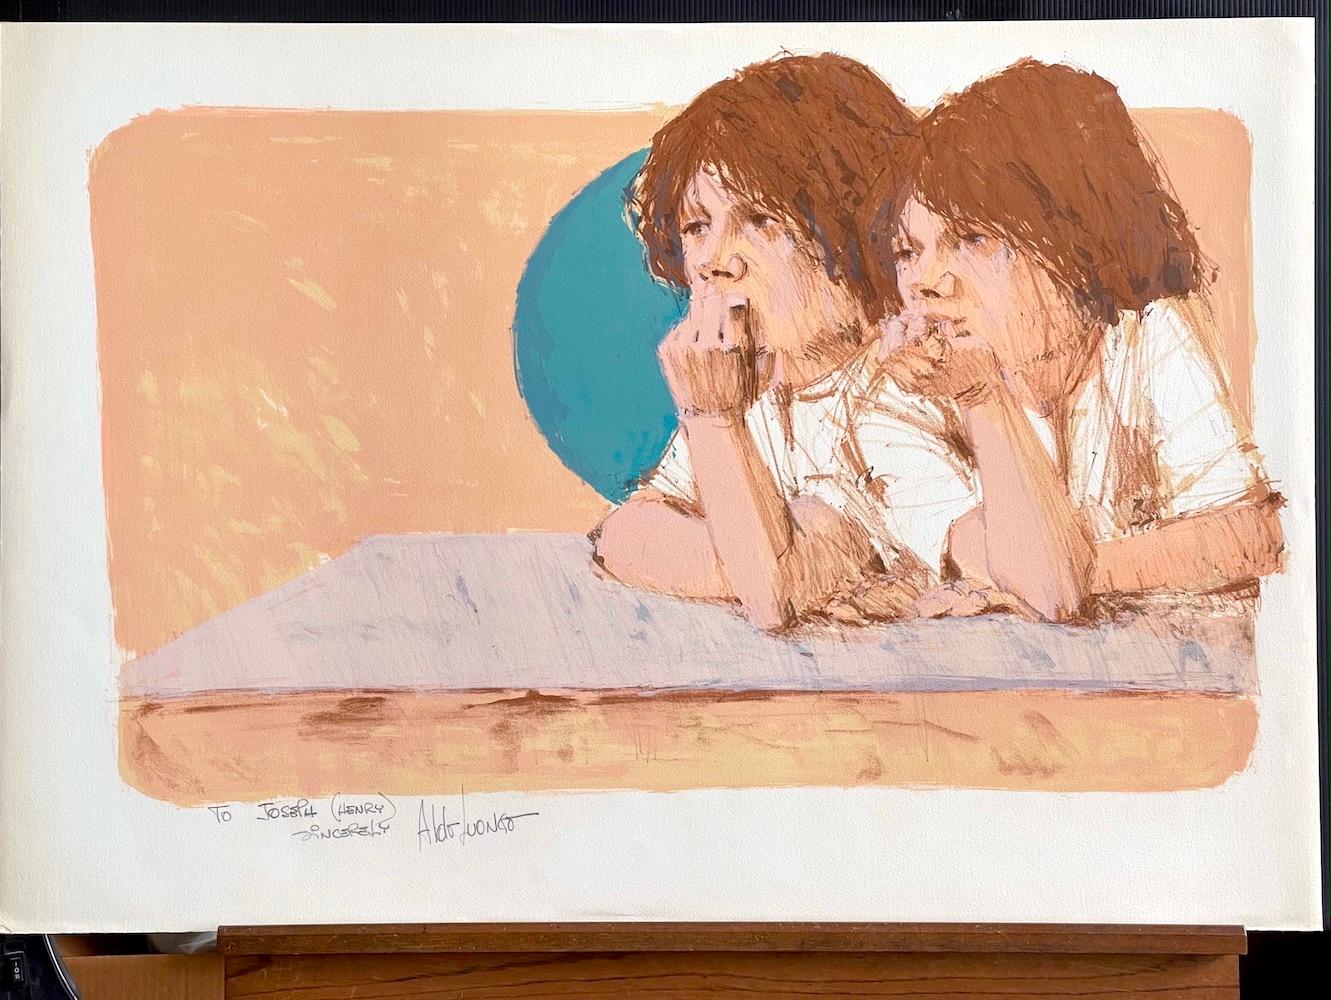 BROTHERS ist eine handgezeichnete Original-Lithografie des argentinischen Künstlers Aldo Luongo. Gedruckt 1975 in der Circle Gallery NYC mit traditionellen handlithografischen Methoden auf archiviertem Arches-Papier, 100% säurefrei.

BROTHERS ist